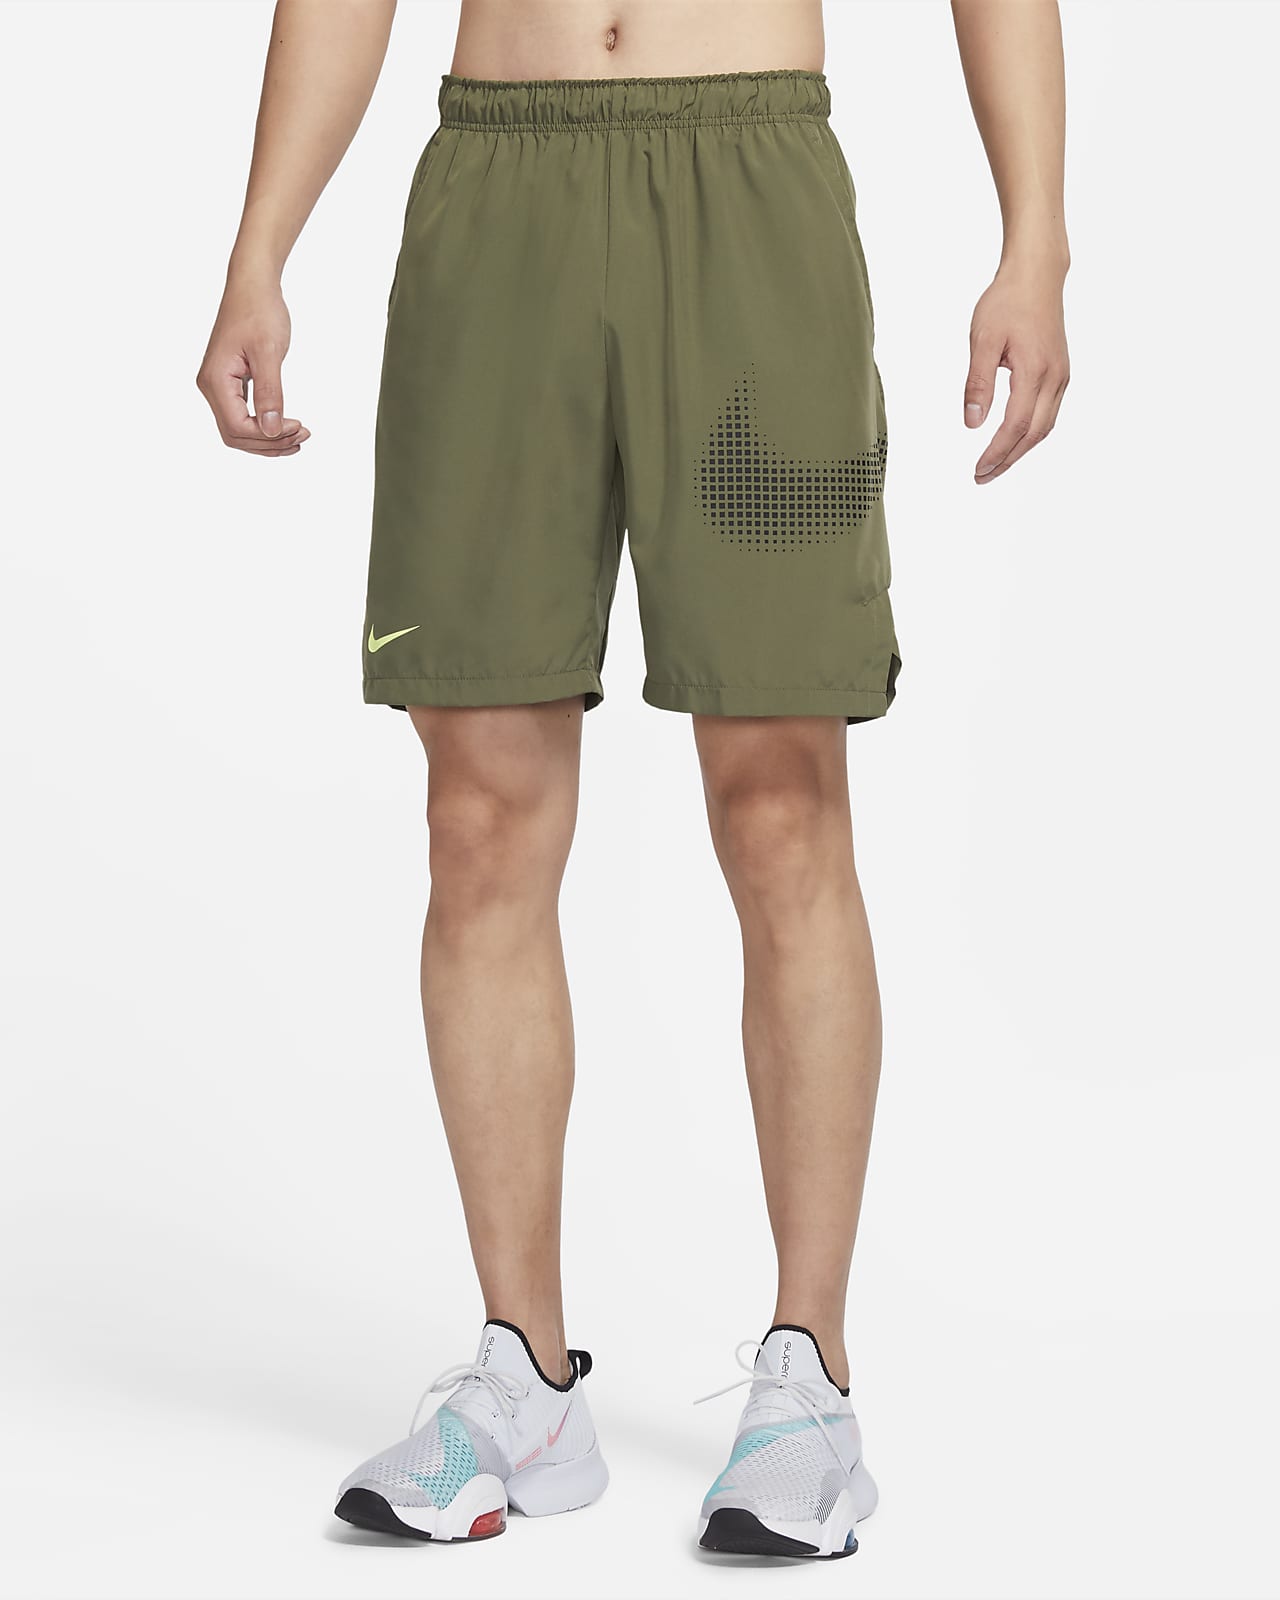 Nike Dri-FIT Flex 男款梭織訓練短褲